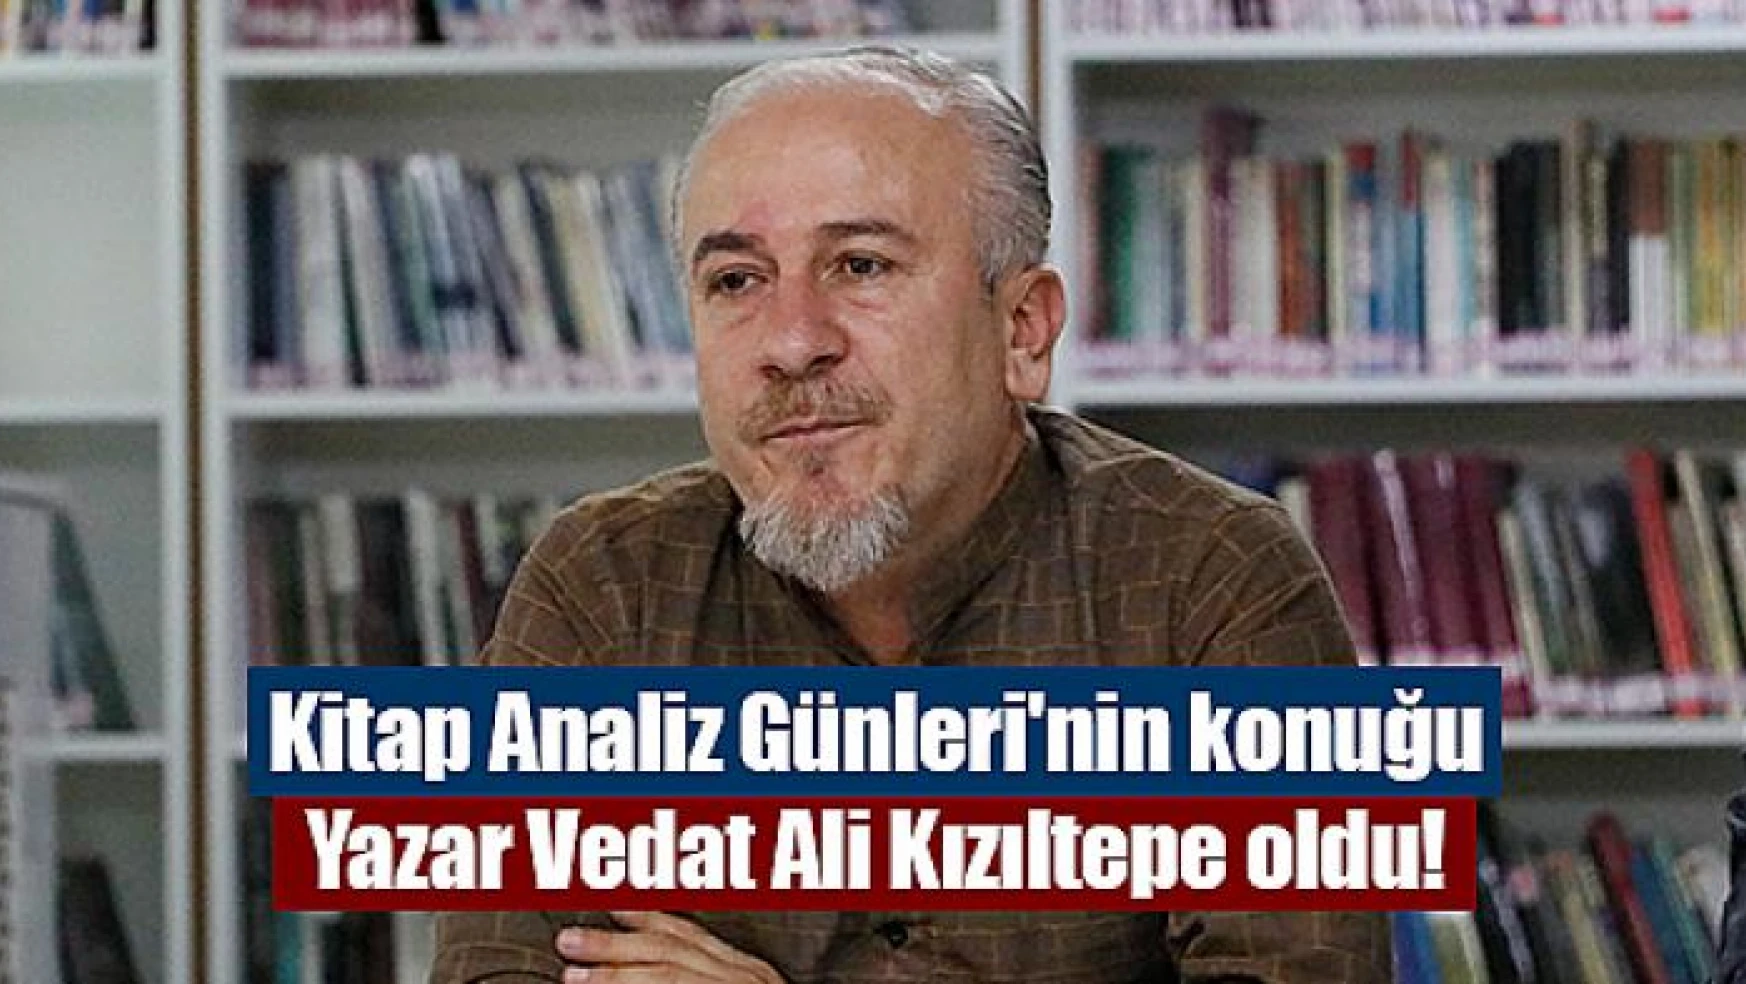 Kitap Analiz Günleri'nin konuğu Yazar Vedat Ali Kızıltepe oldu!